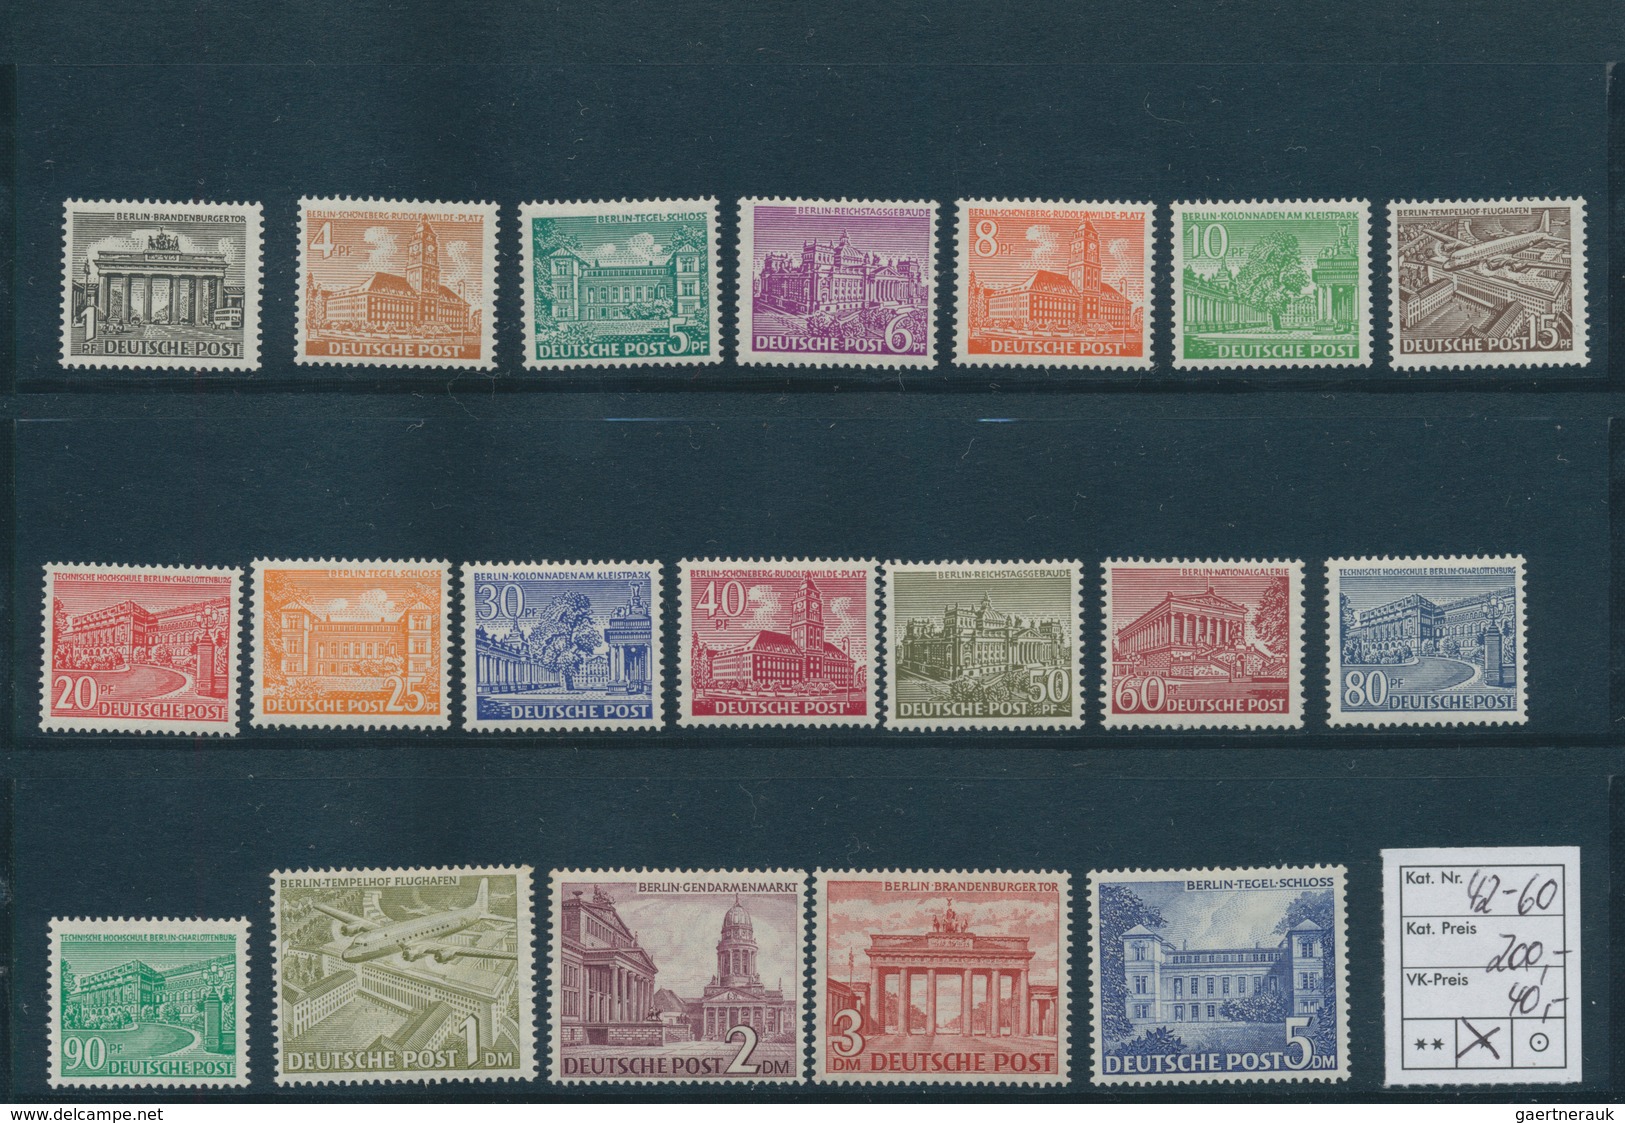 32484 Berlin: 1948/1950, Partie von besseren Ausgaben auf Steckkarten, dabei MiNr. 1/20 (2), 35/41, 42/60